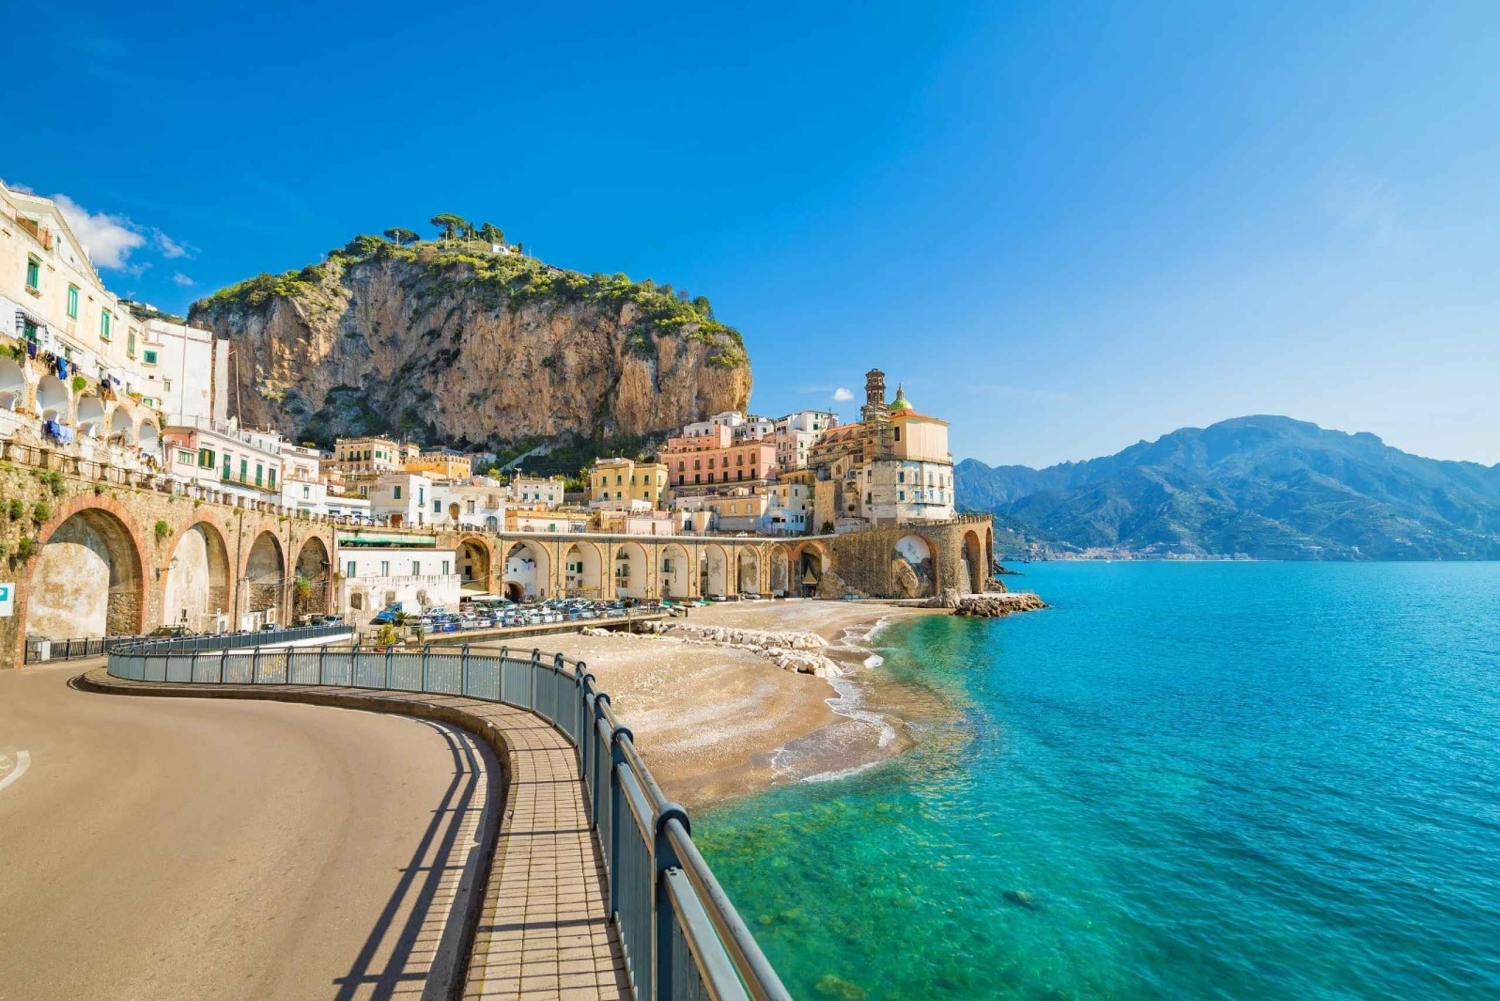 Z Florencji: transfer na wybrzeże Amalfi z przystankiem w Pompejach